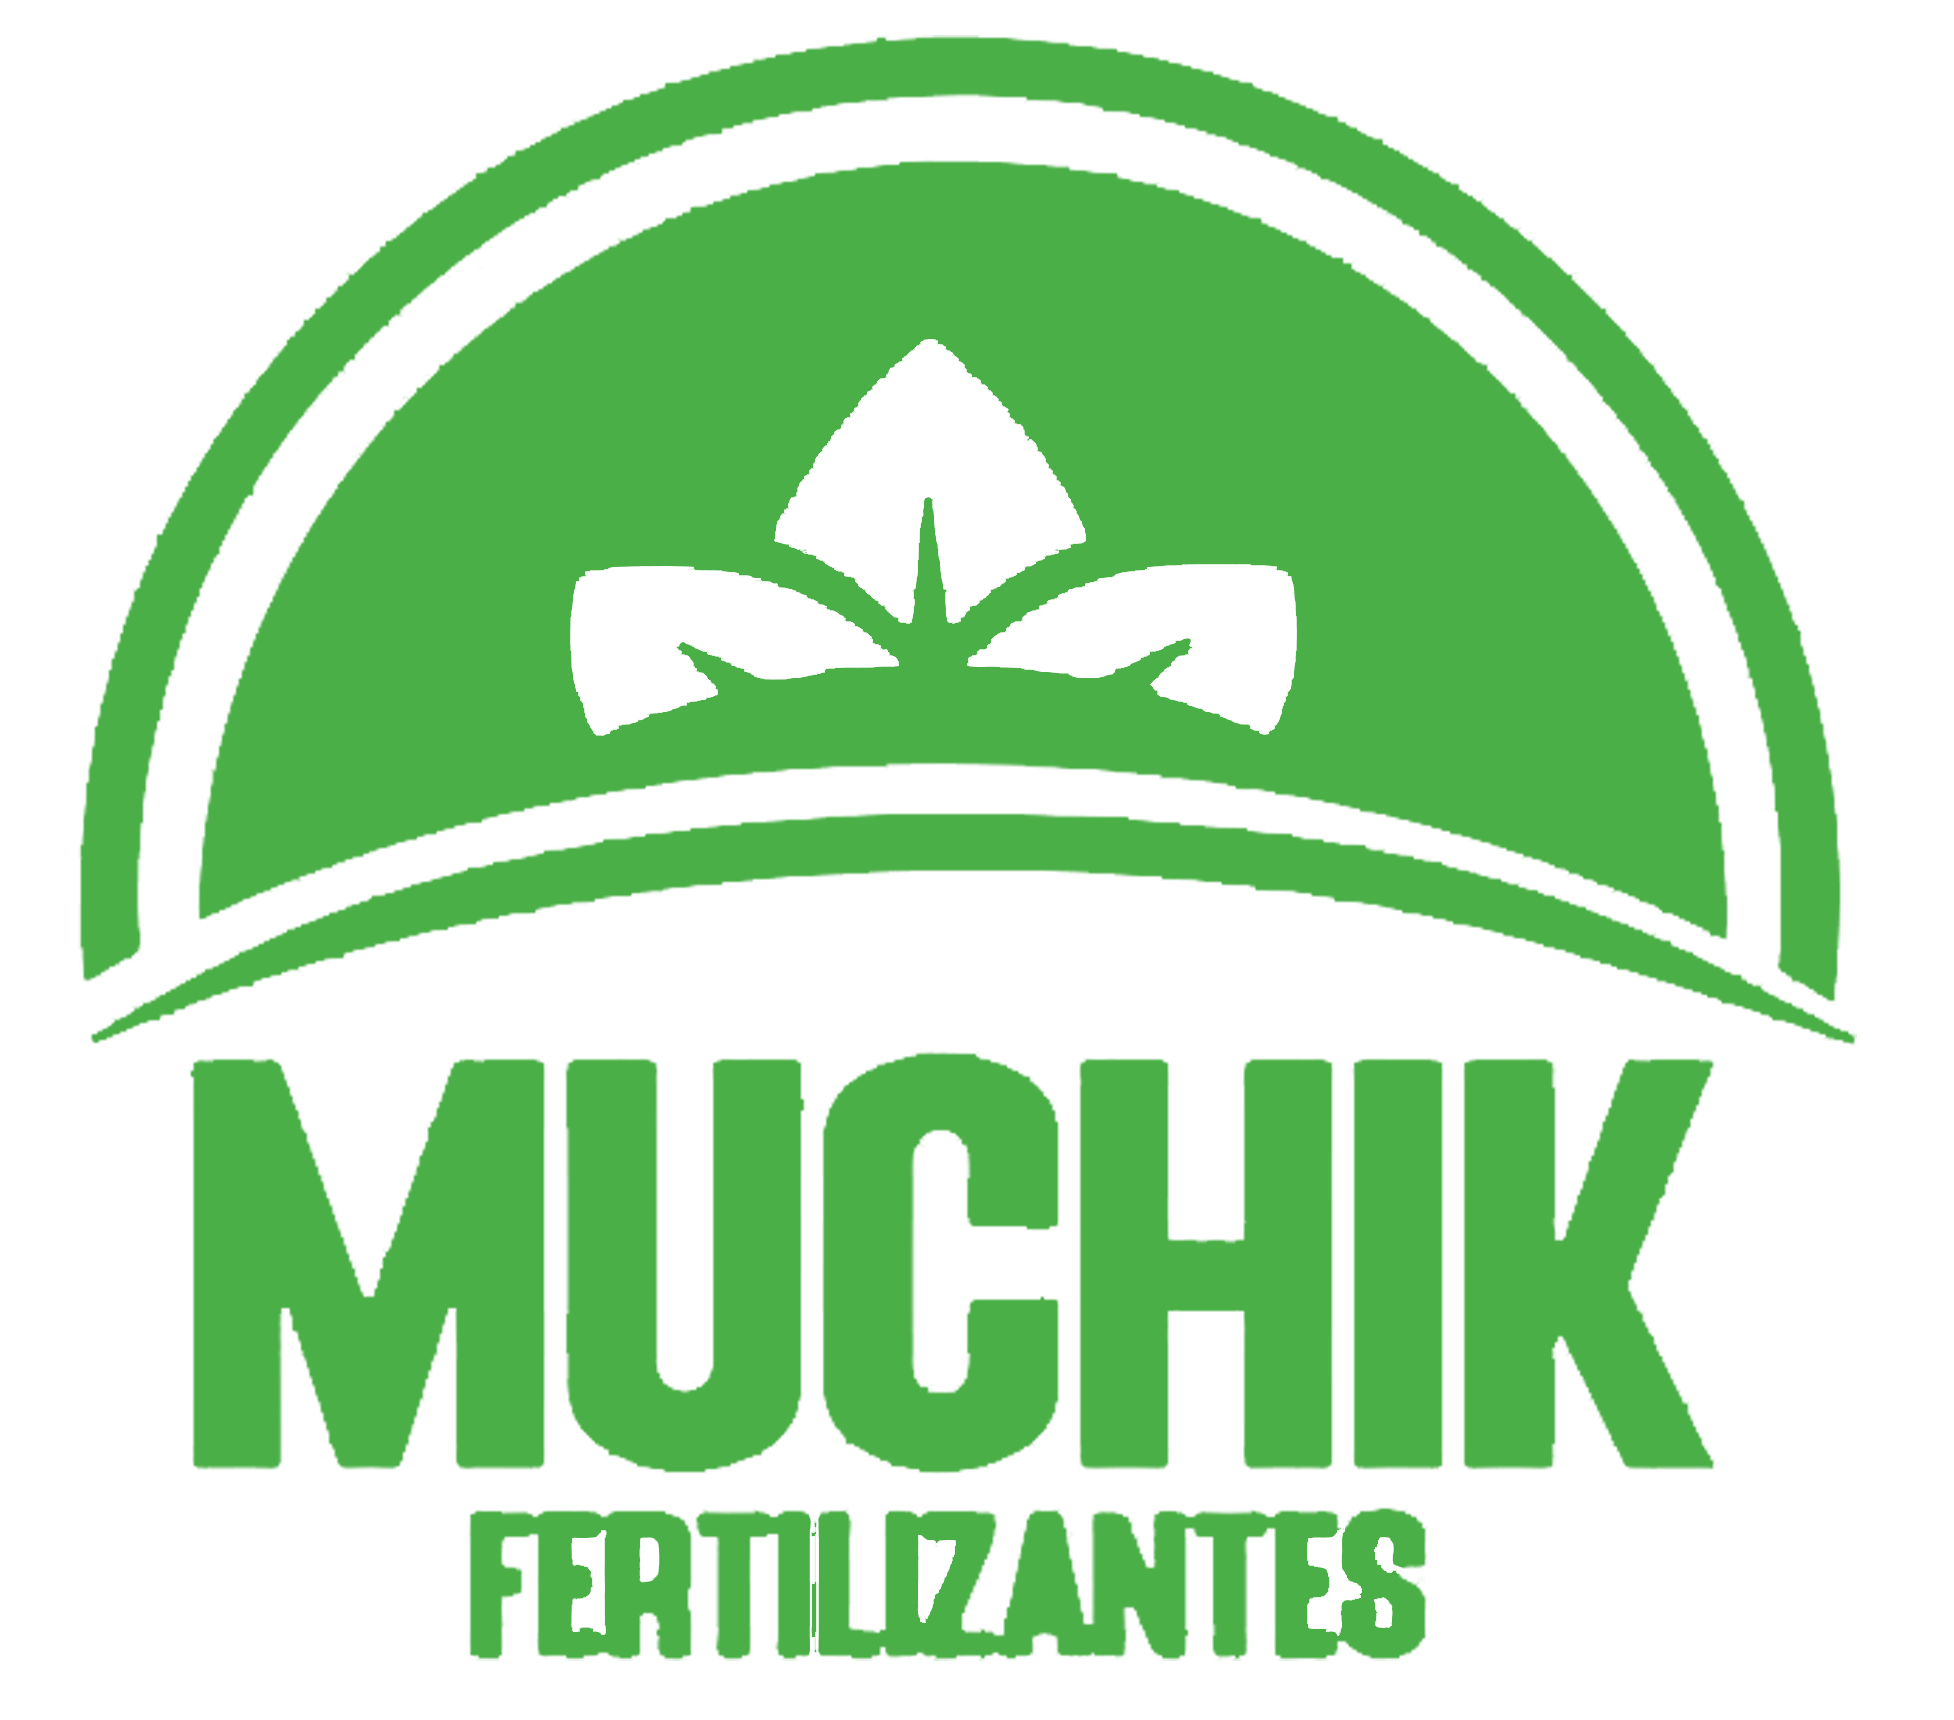 Fertilizantes Muchik